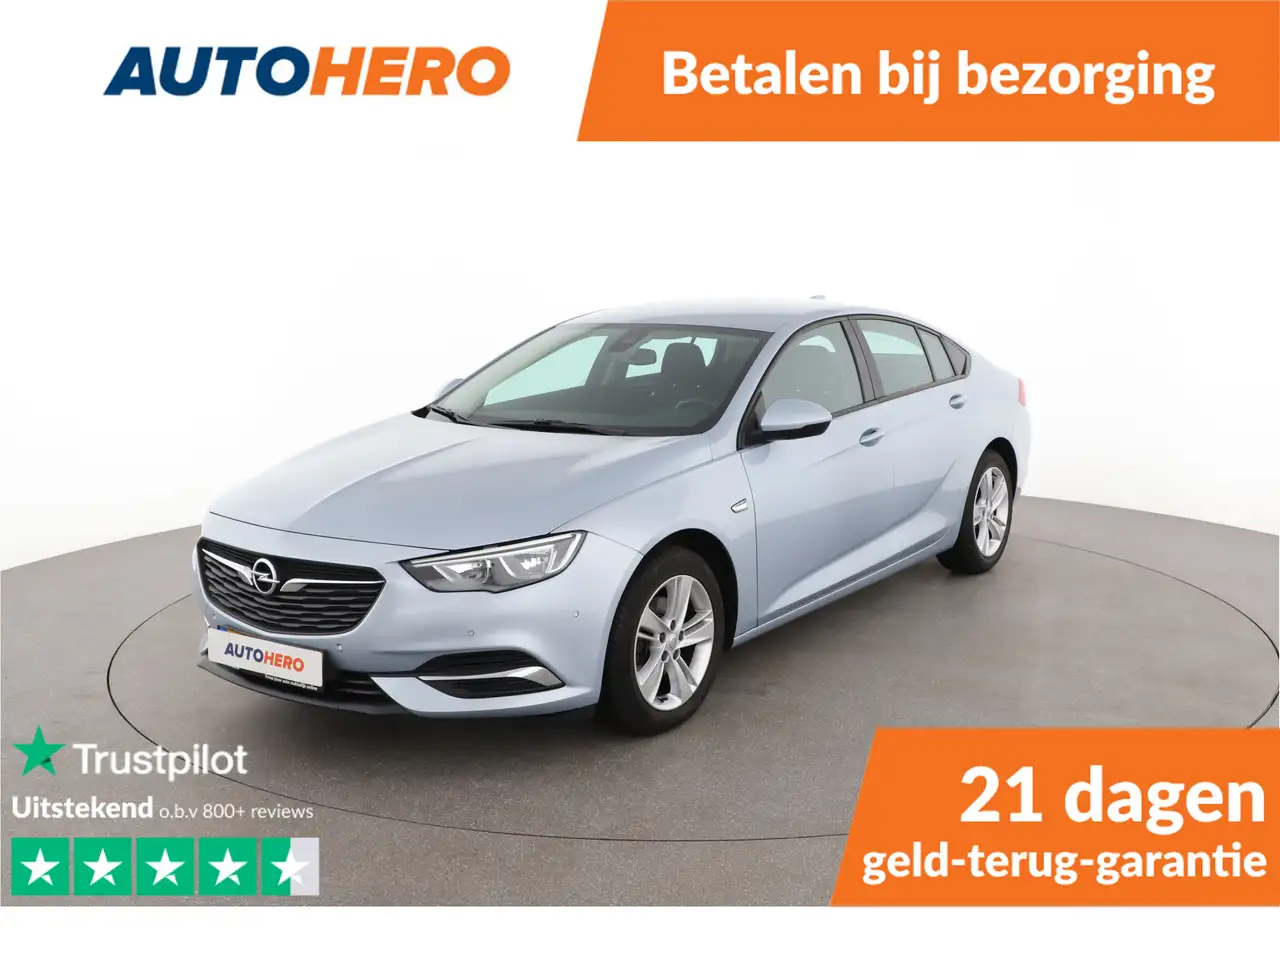 Opel Insignia Stadswagen in Grijs tweedehands in AMSTERDAM voor € 13.249,-